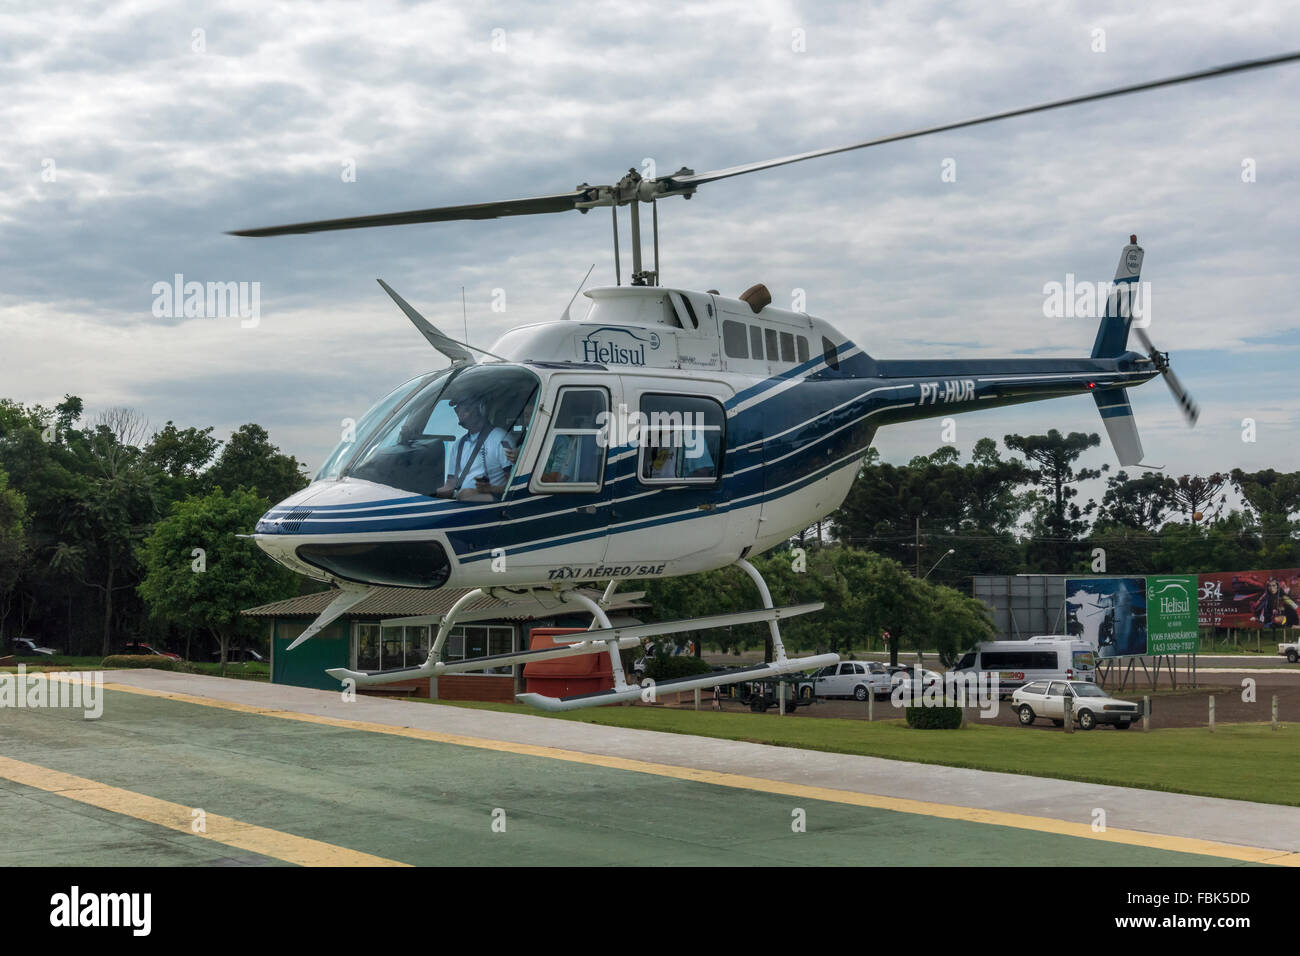 Décolle dans un hélicoptère Helisul de photographier les chutes, Foz do Iguaçu, Brésil Banque D'Images